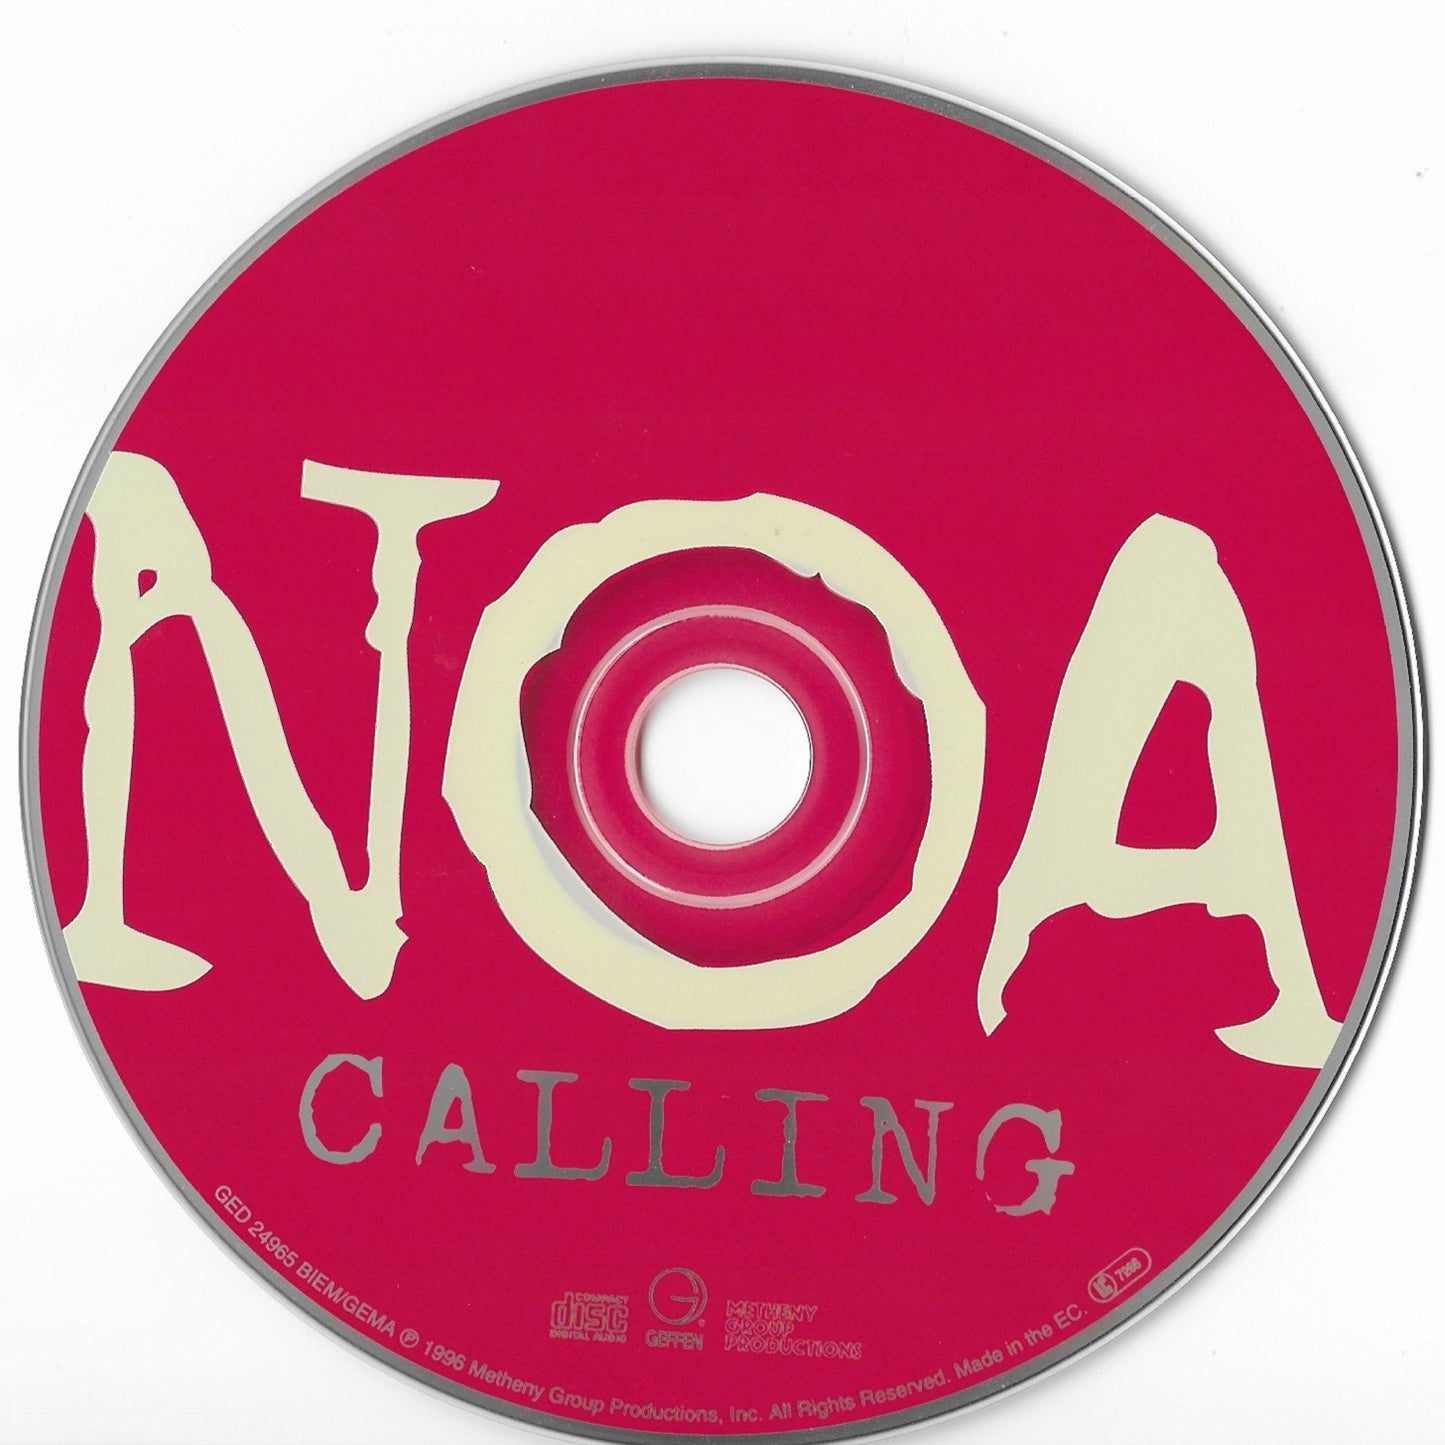 NOA - Calling